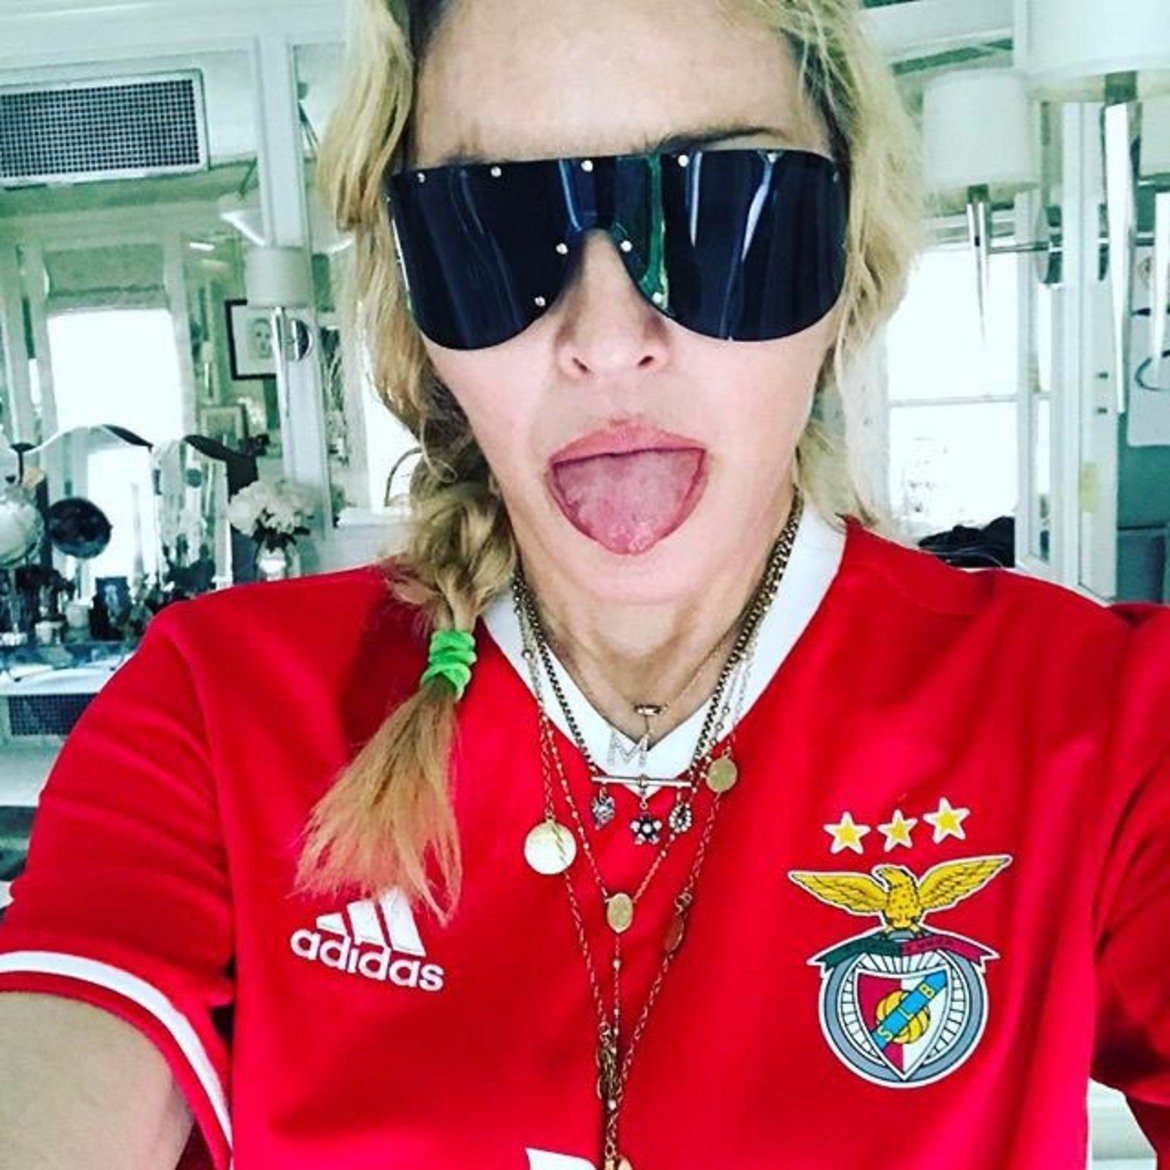 Бенфика: Мадона
Певицата наскоро се премести в Лисабон и дори записа сина си в академията на Бенфика.